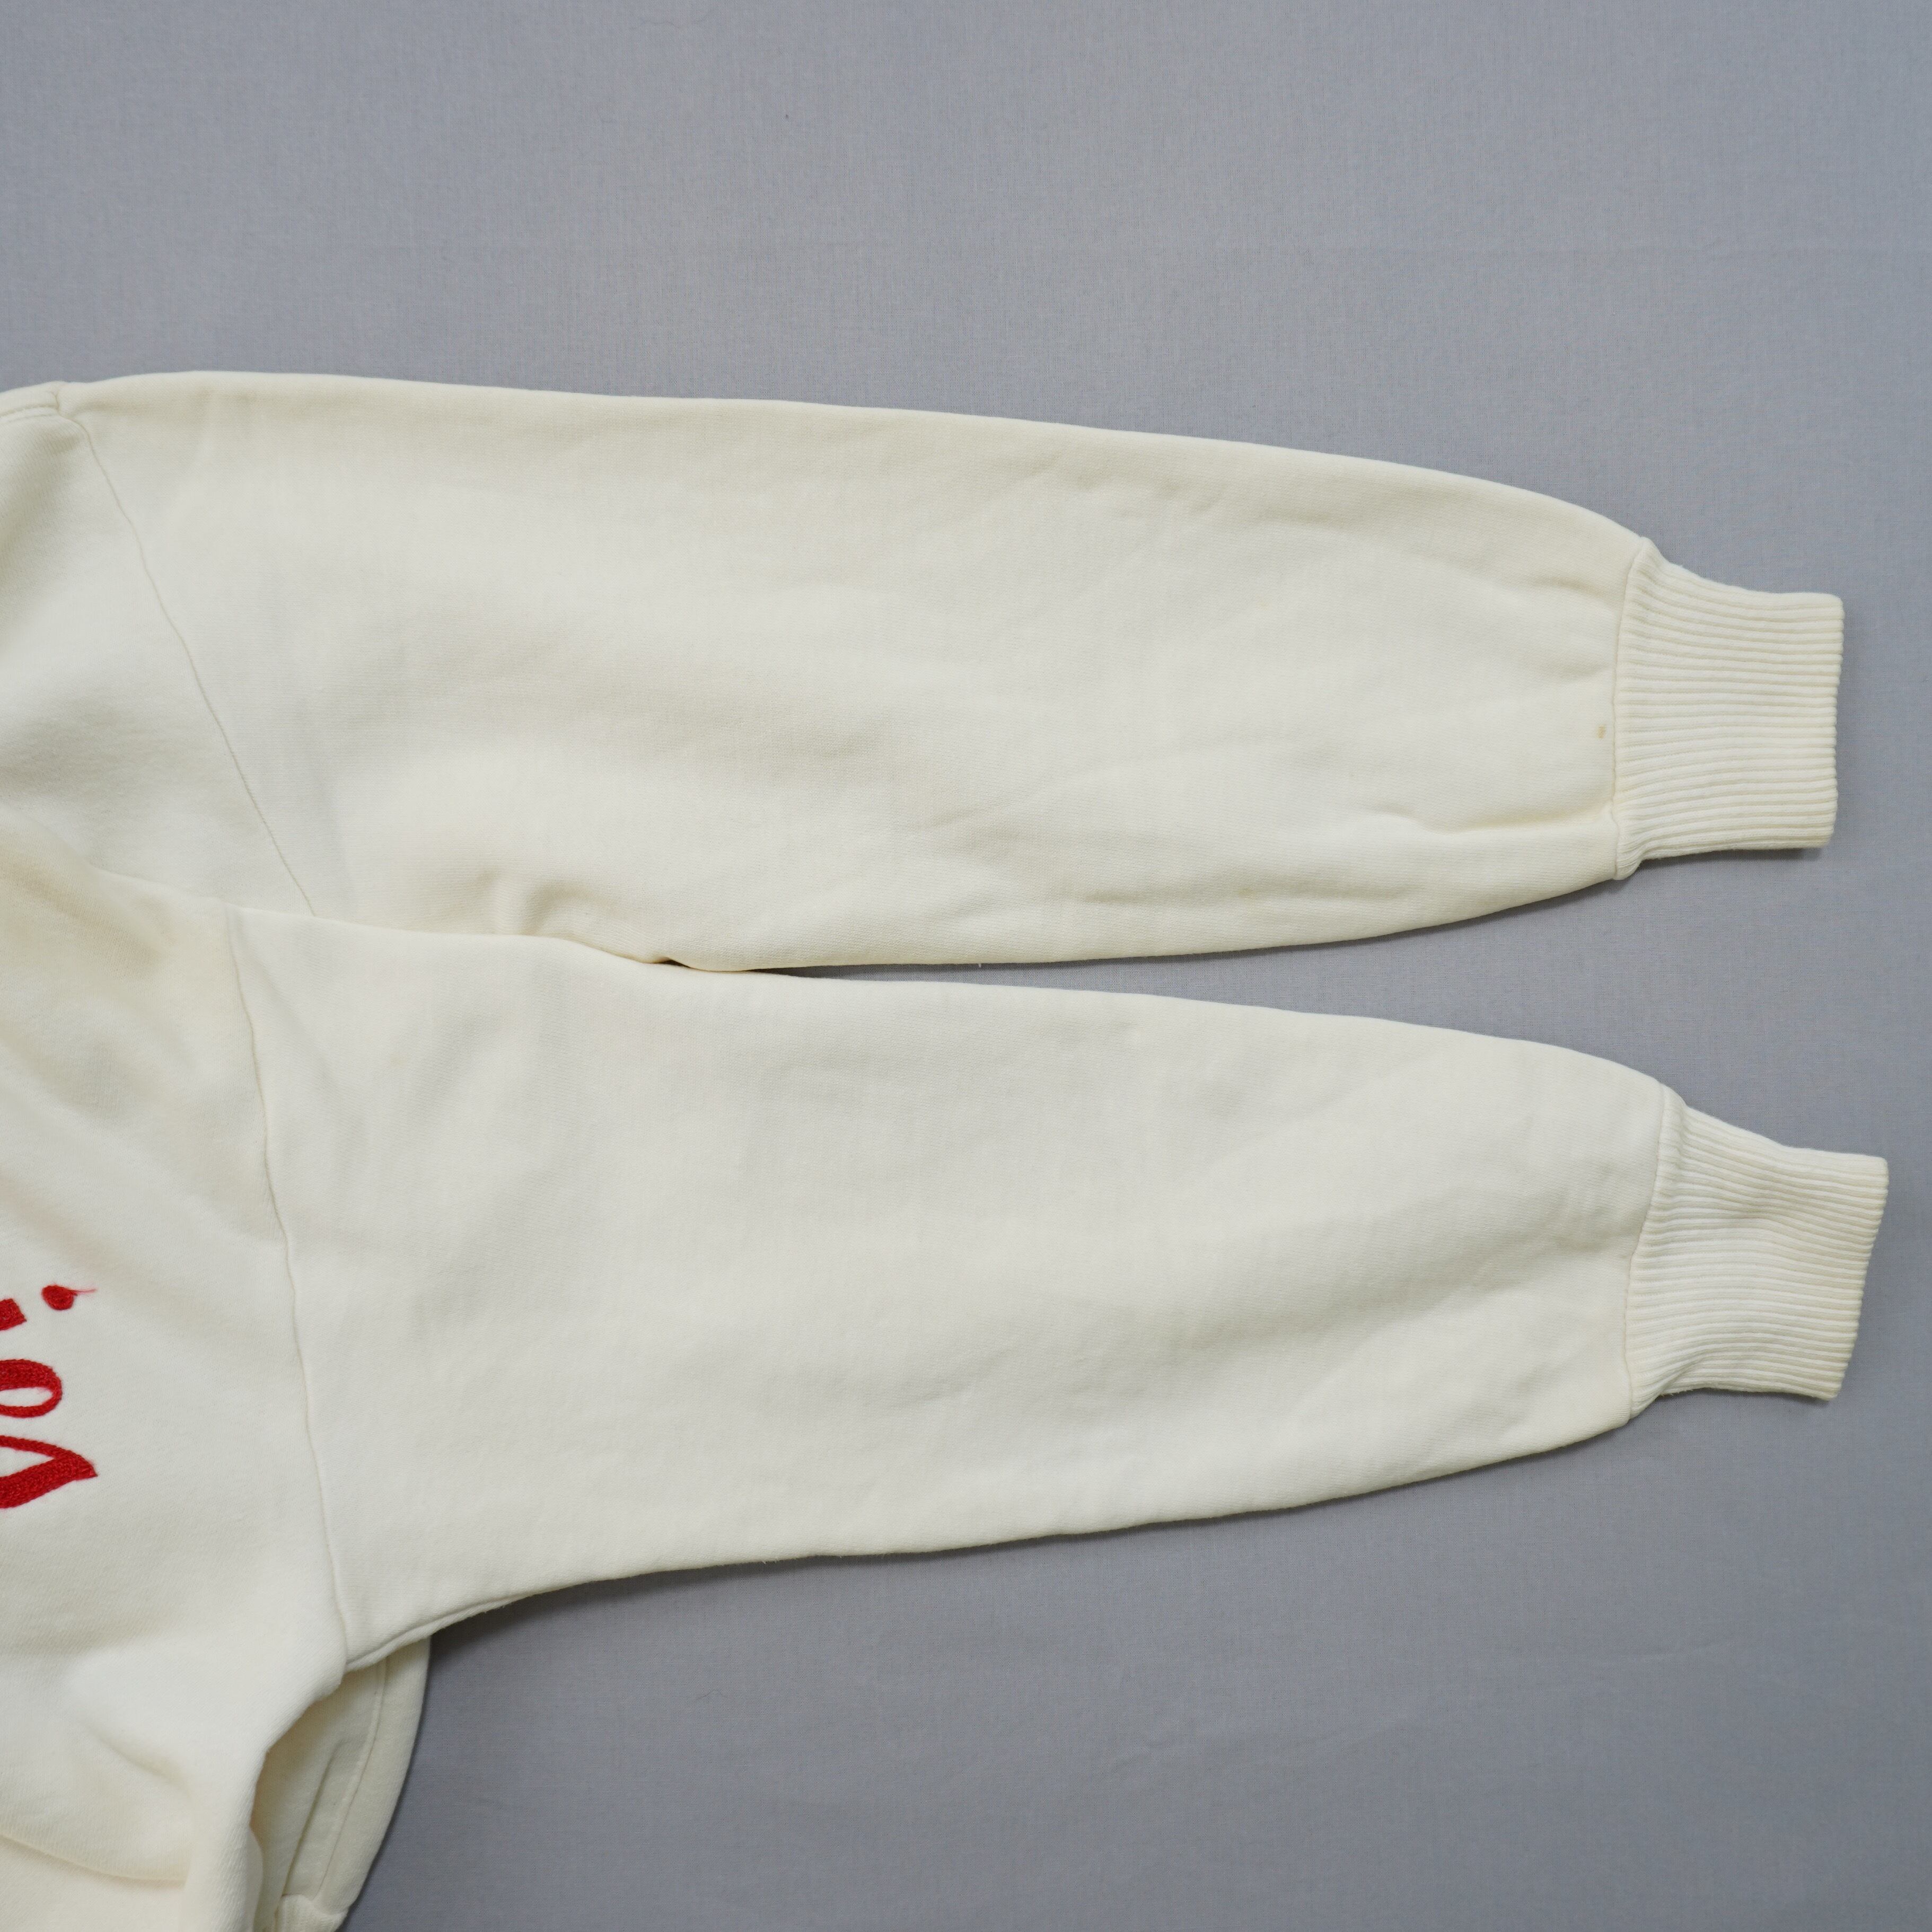 AKOM FULL ZIP Sweatshirts 1950s USA M